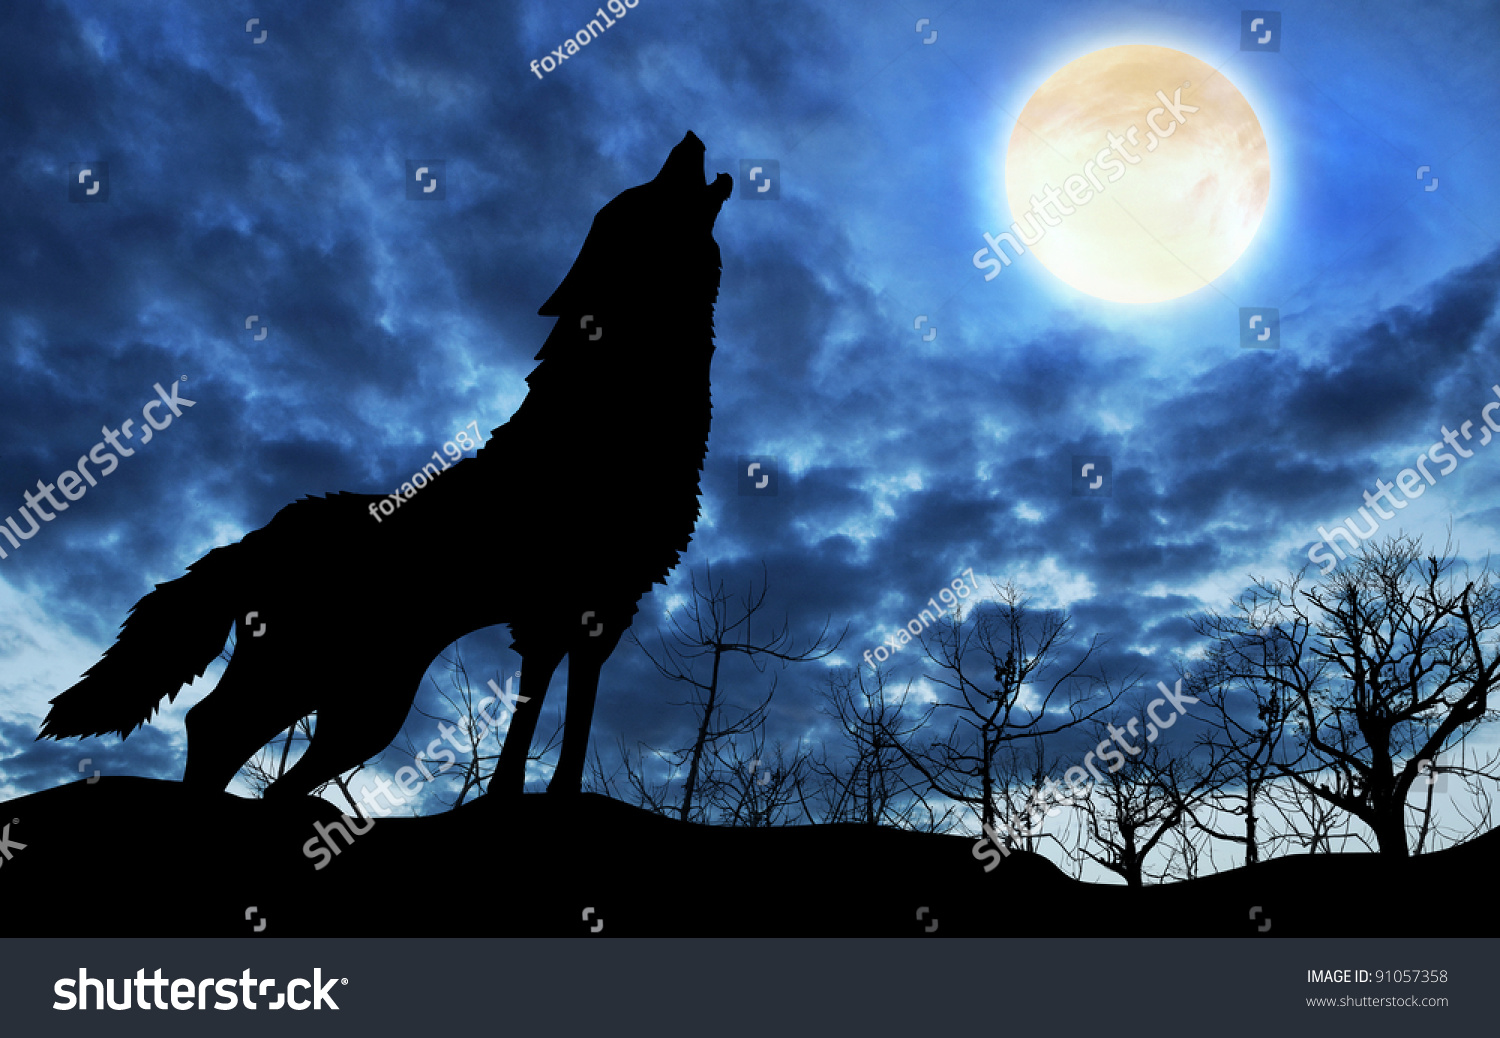 満月に向かってシルエットで遠吠えする狼 のイラスト素材